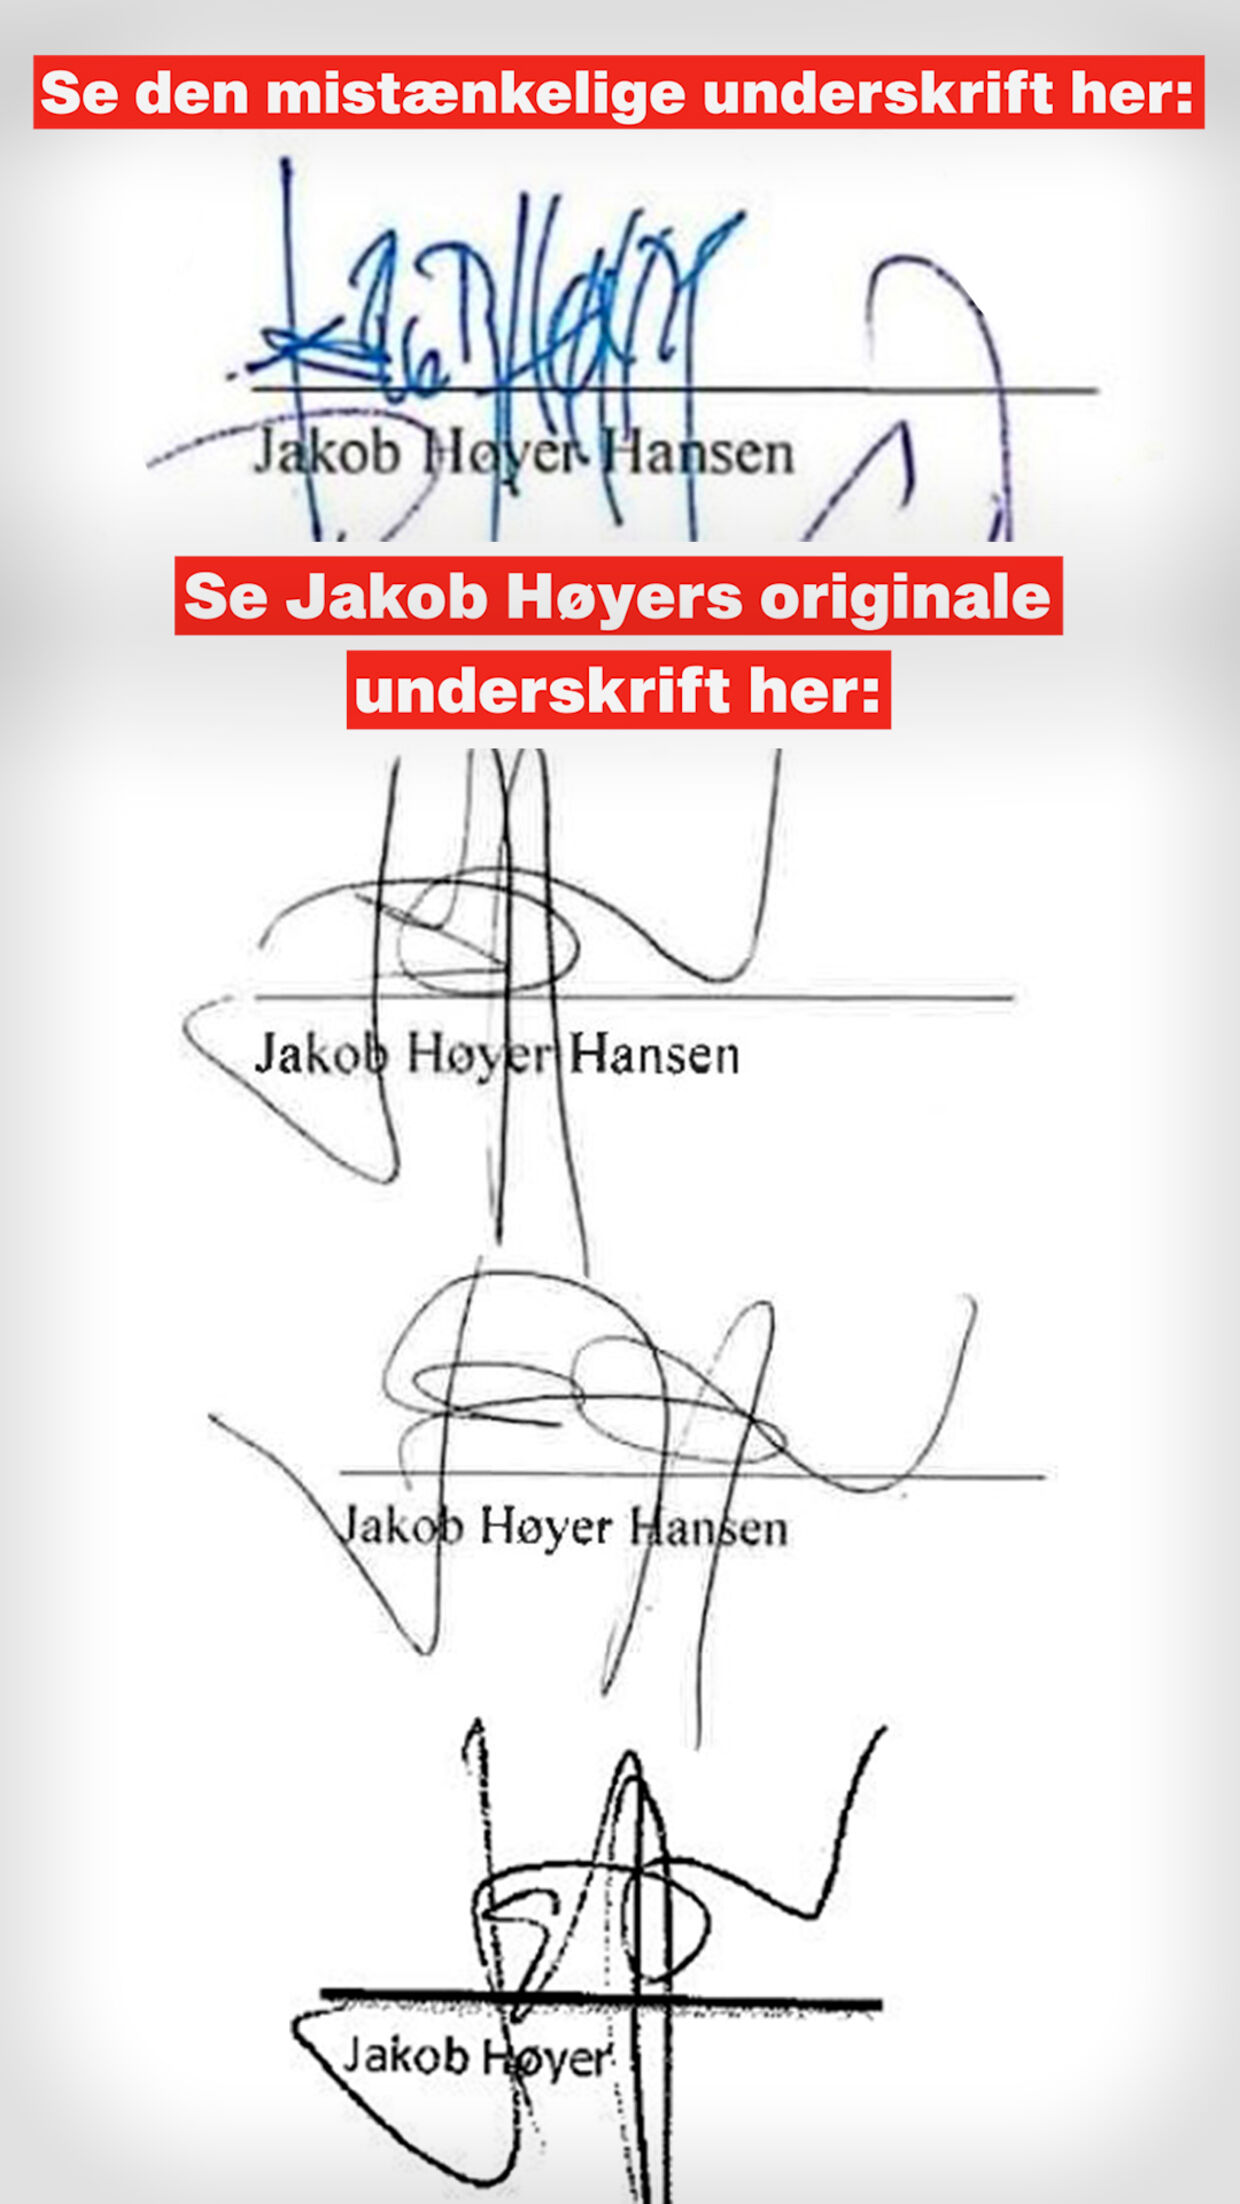 Ifølge grafolog Per F. Andersen er den øverste underskrift forfalsket. Det viser en sammenligning med Jakob Høyers andre underskrifter.